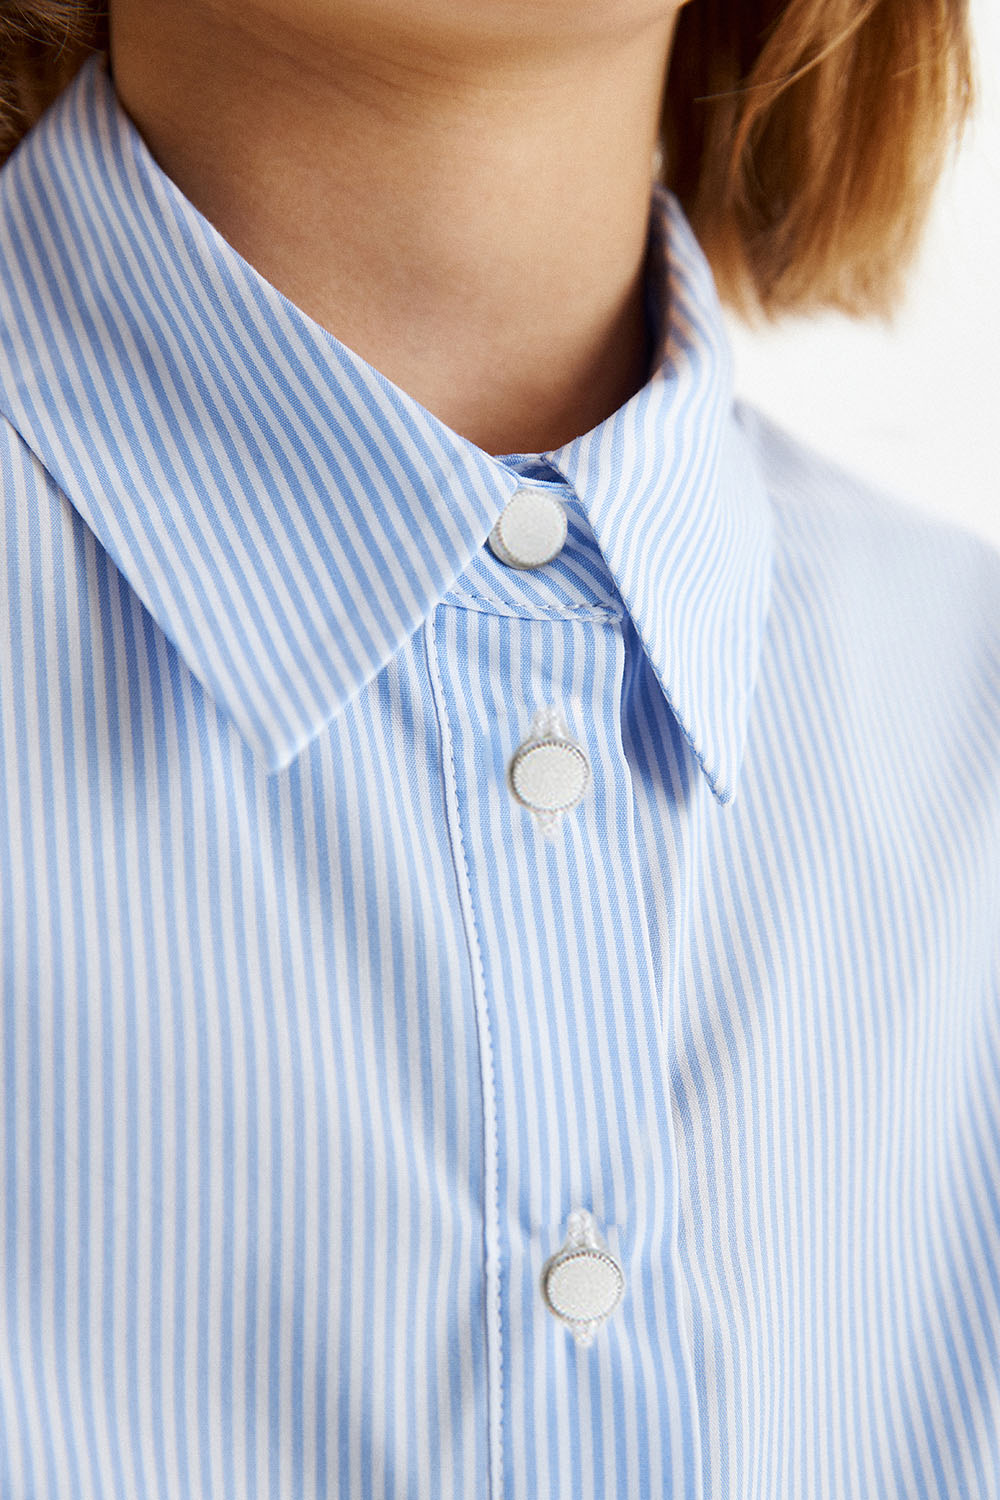 Блузка в полоску с объемными рукавами (SSFSG-329-23113-314) Silver spoon